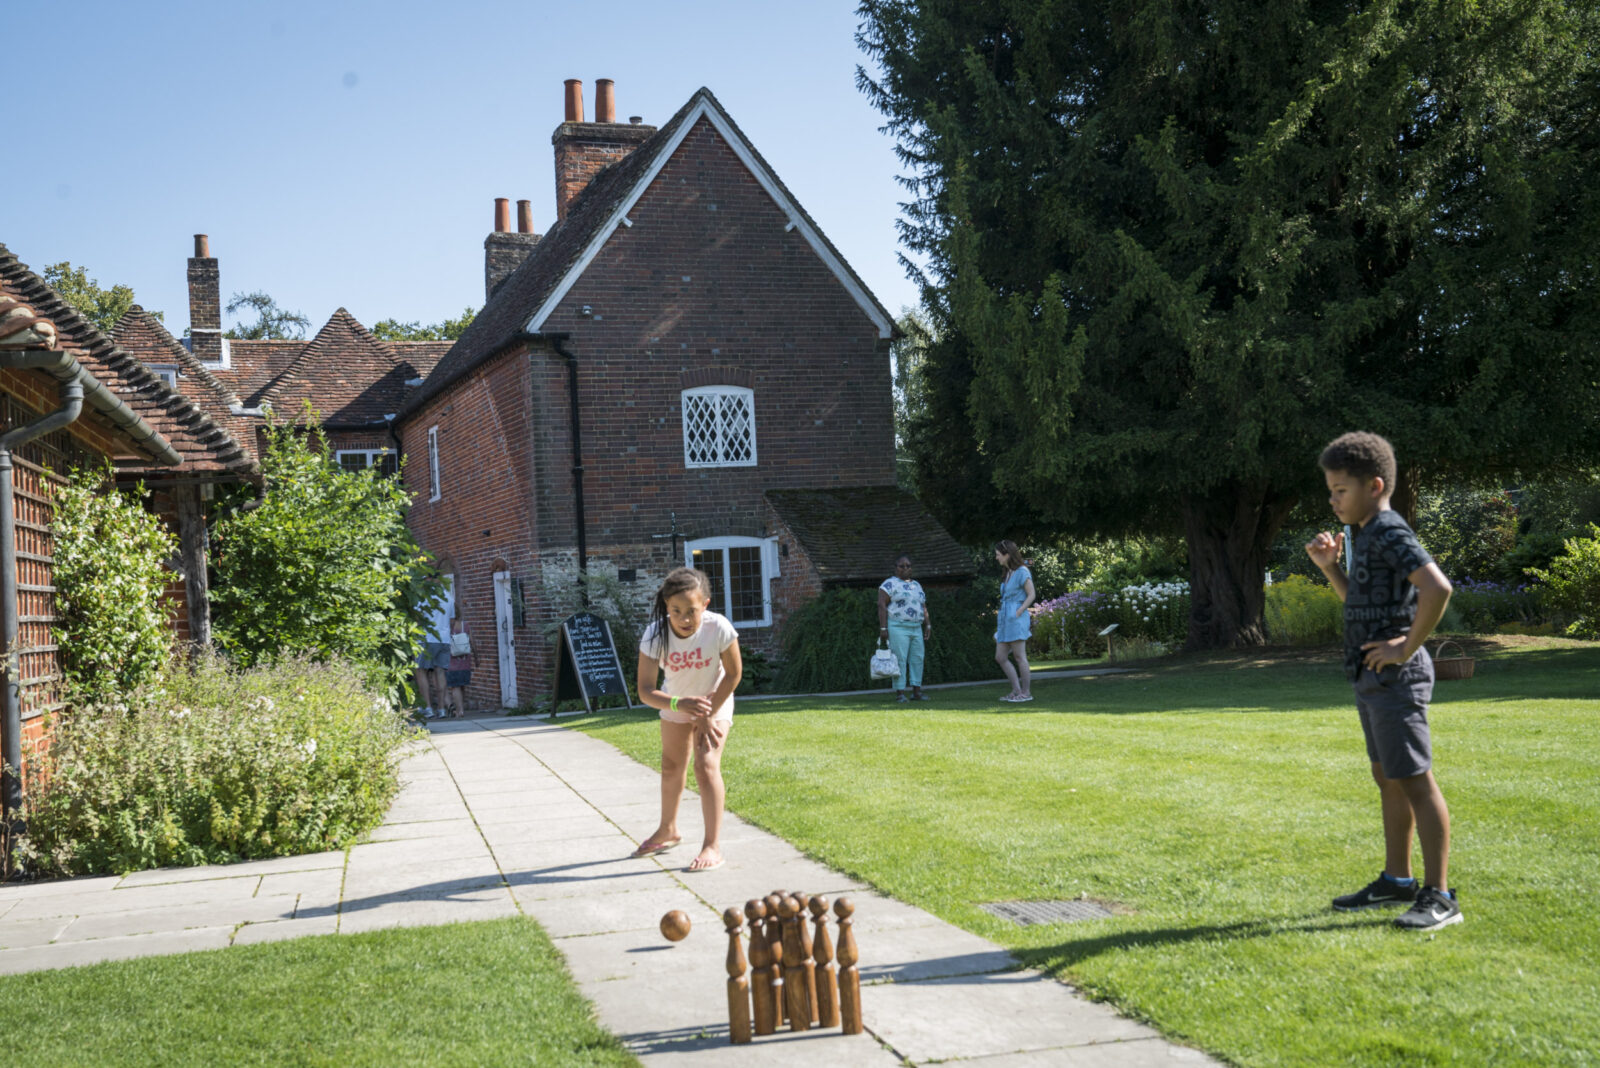 Children play skittles in the garden at Jane Austen's House